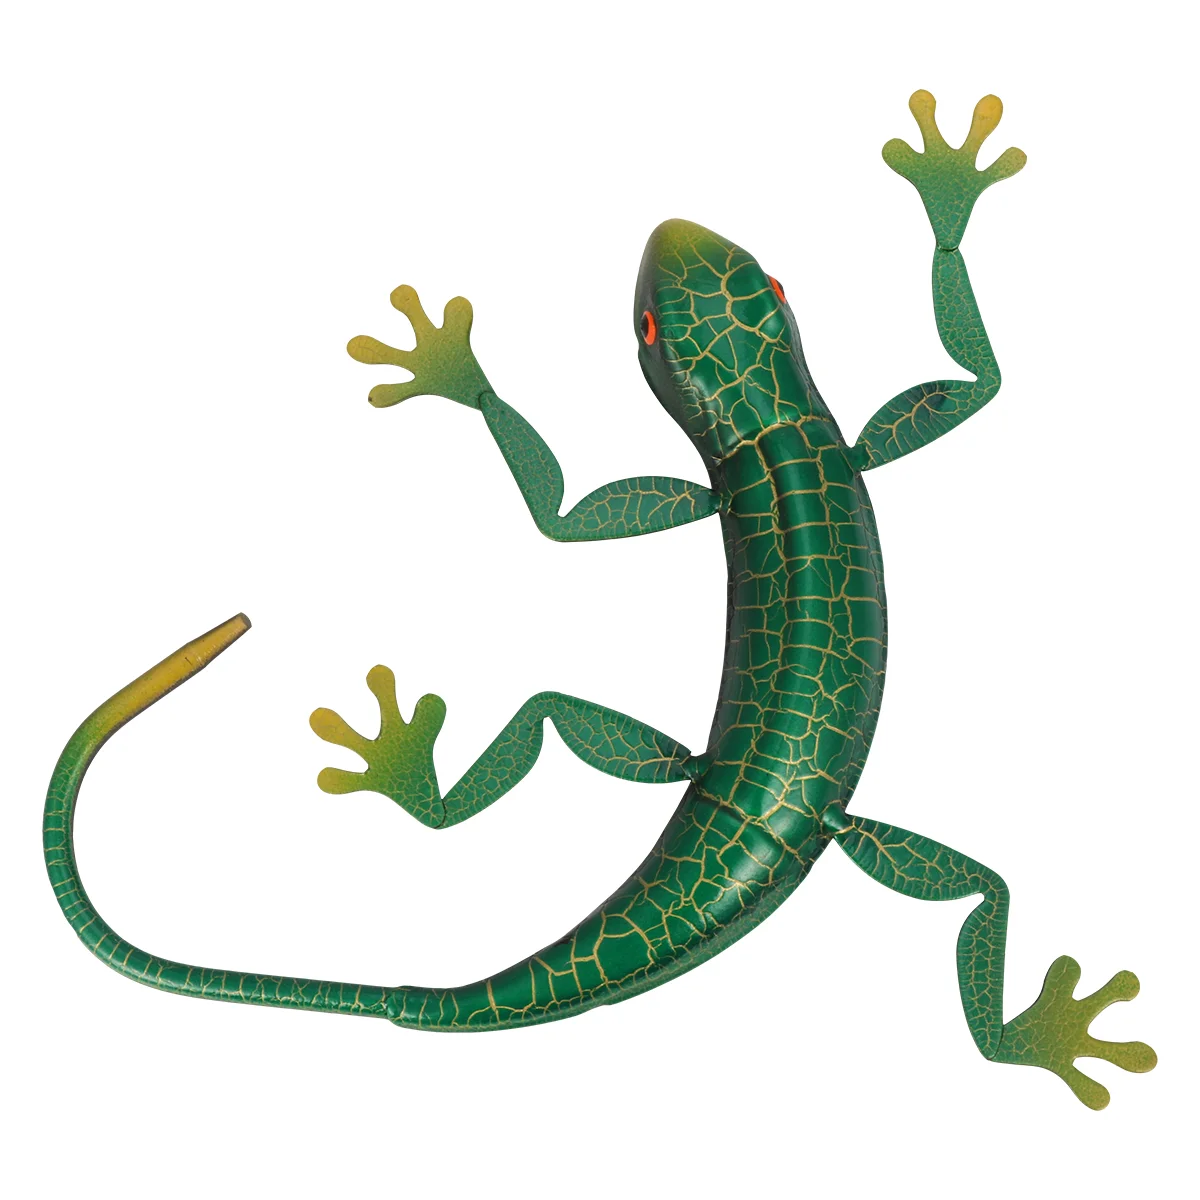 

Металлическая настенная подвесная декорация Gecko, вдохновляющая скульптура ящерицы для помещений, улицы, дома, сада, искусственная зеленая